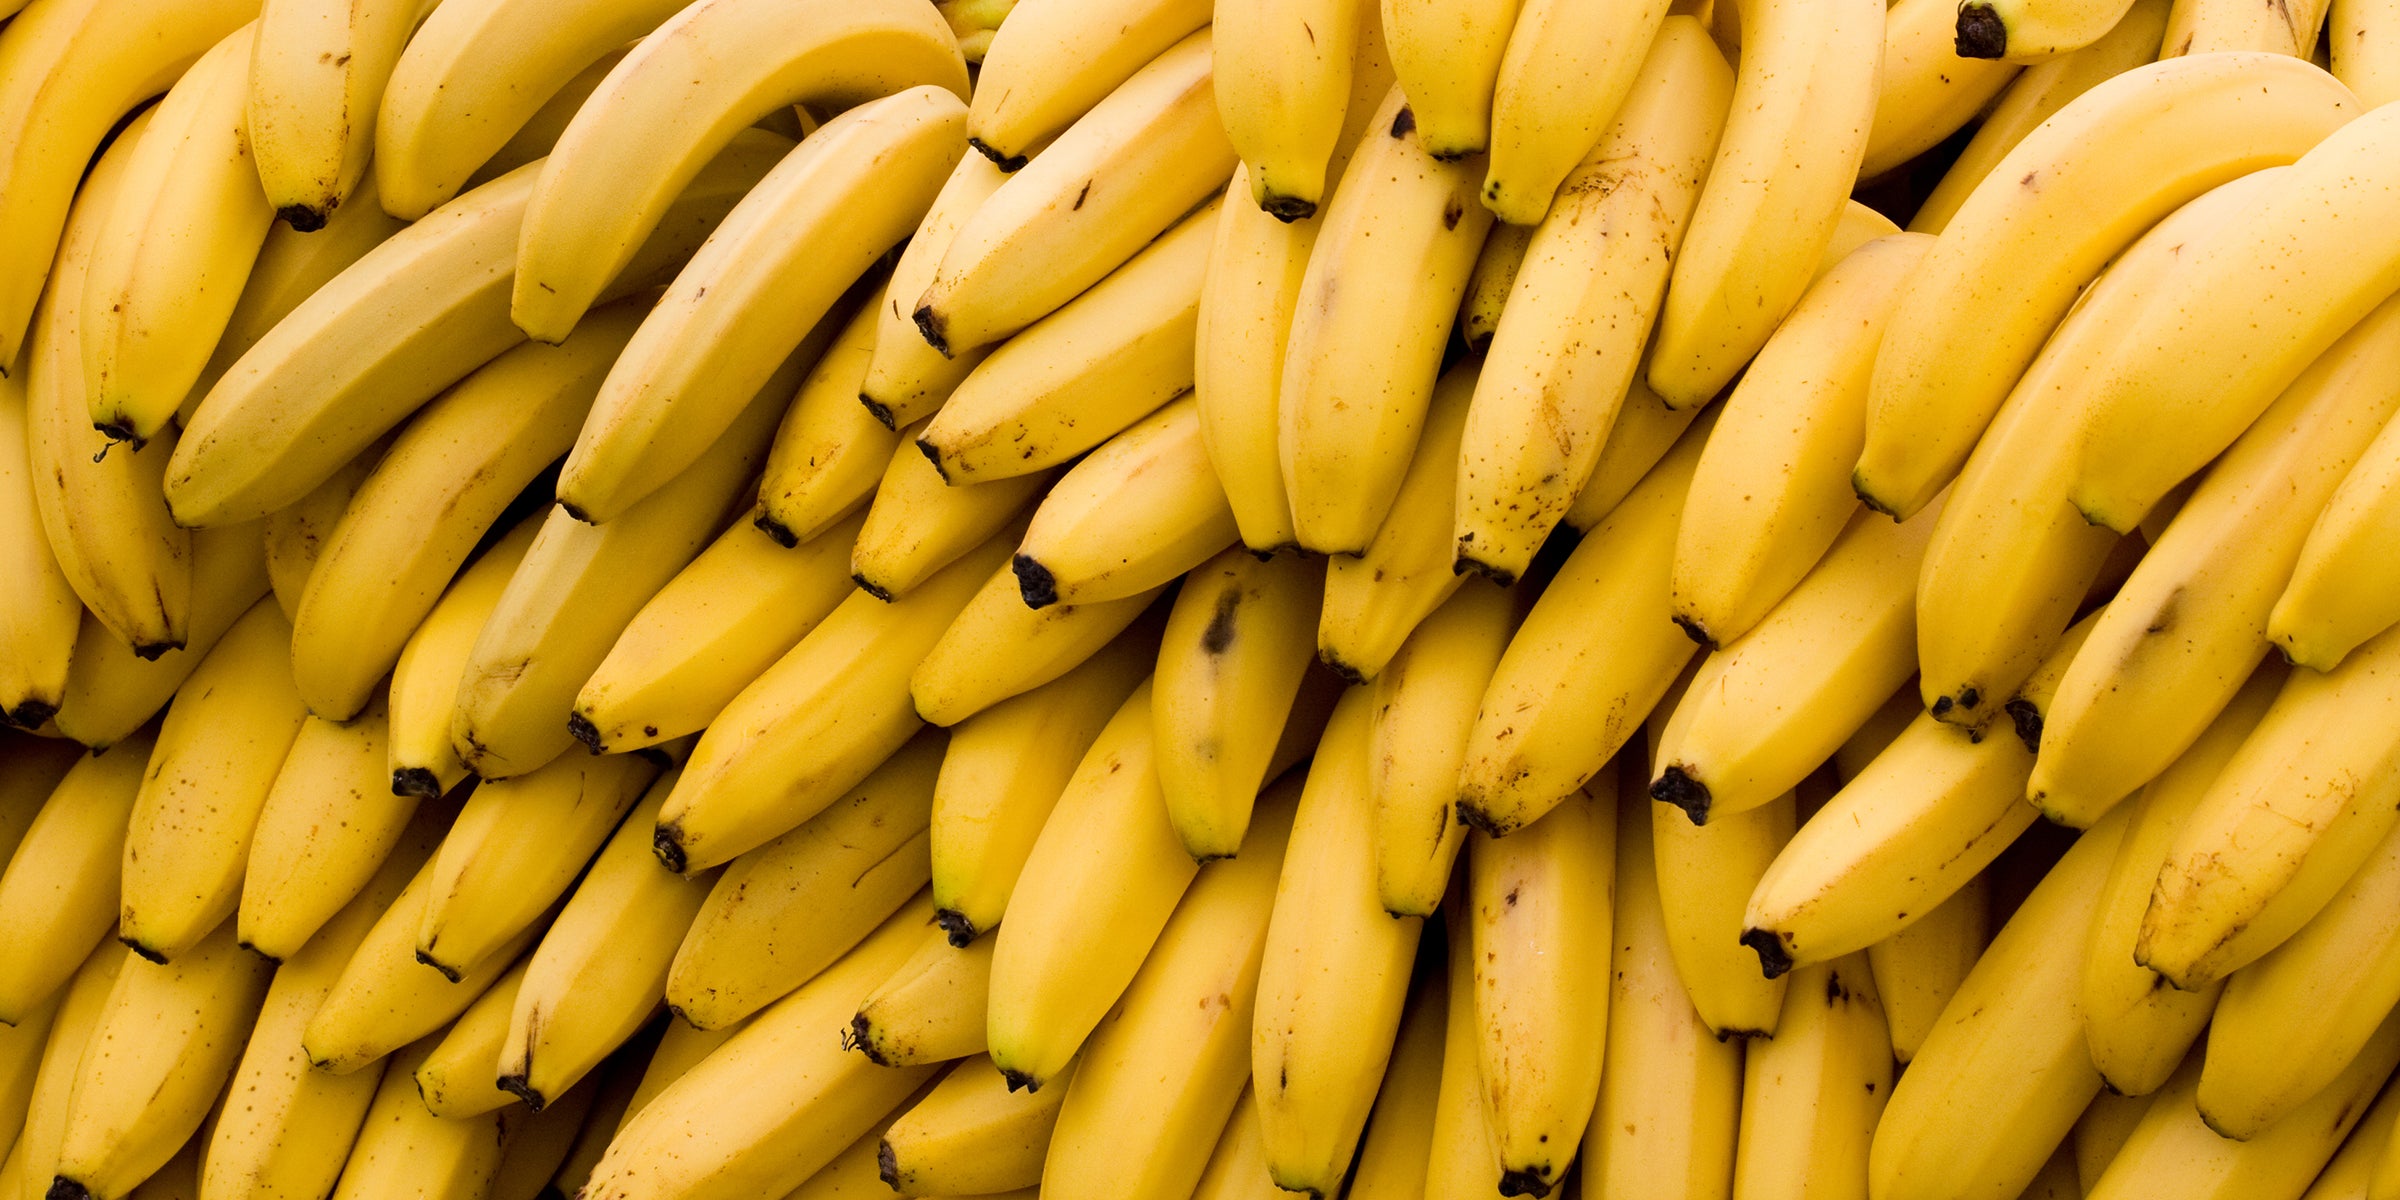 Alot of Bananas